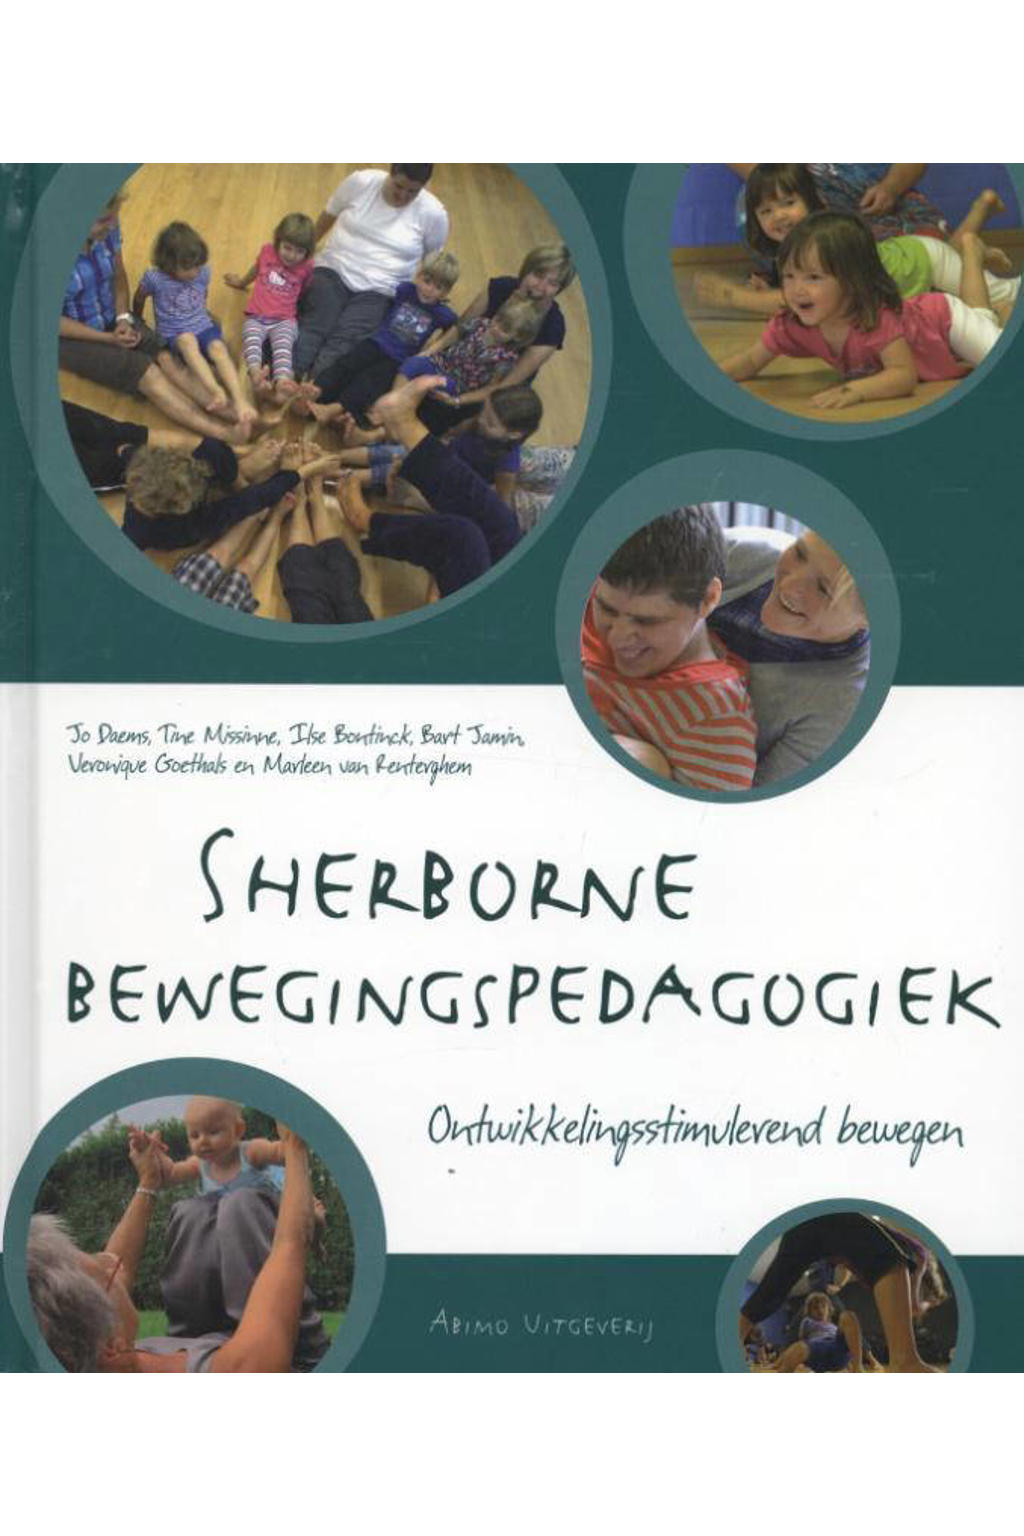 Sherborne bewegingspedagogiek - Jo Daems, Tine Missine, Ilse Bontinck, e.a.